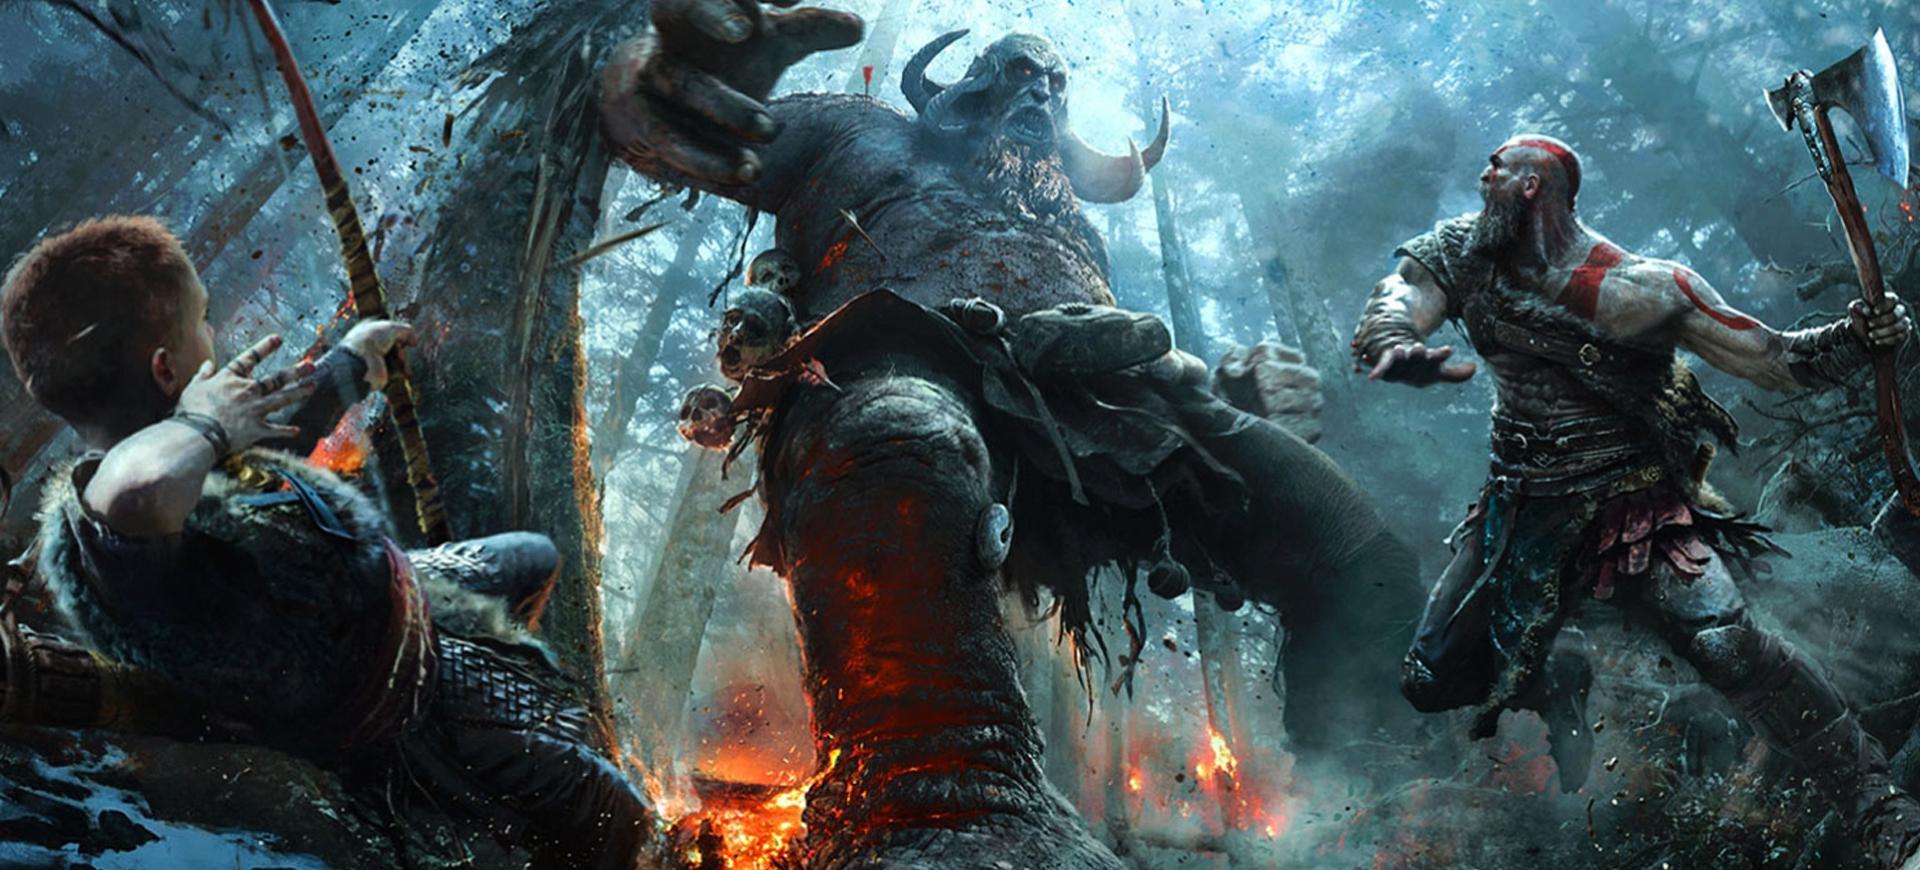 E3 2016 | God of War - Chiến thần trong sự cách tân đầy mới mẻ! - Giới Thiệu Game